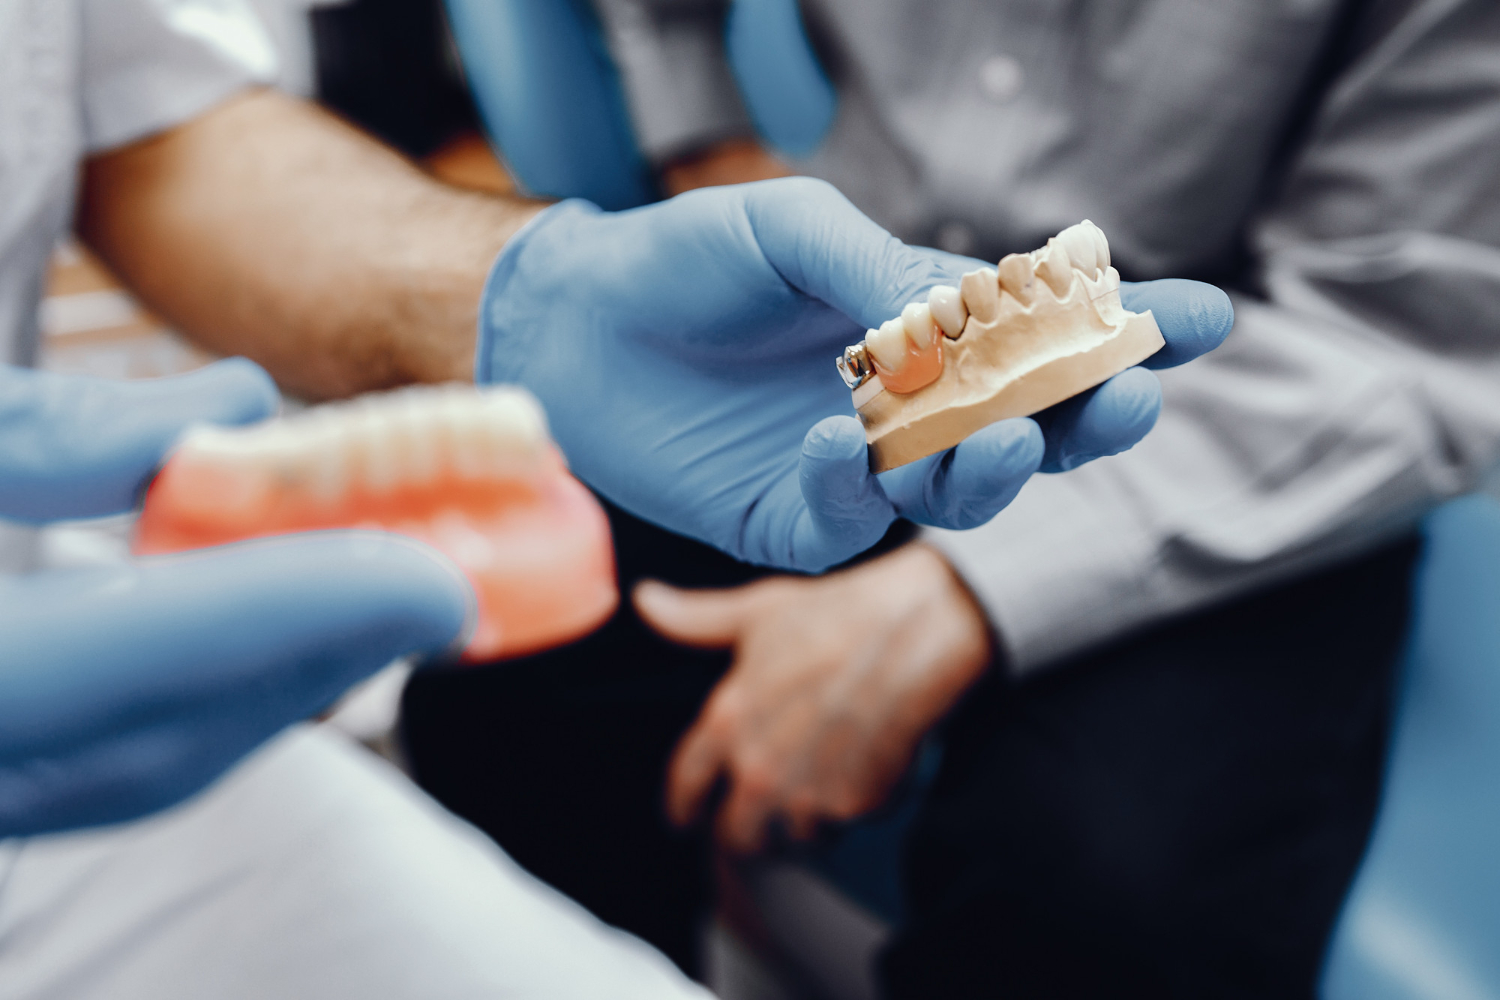 Zahnimplantate in der Türkei Kosten, Qualität und Erfahrungen